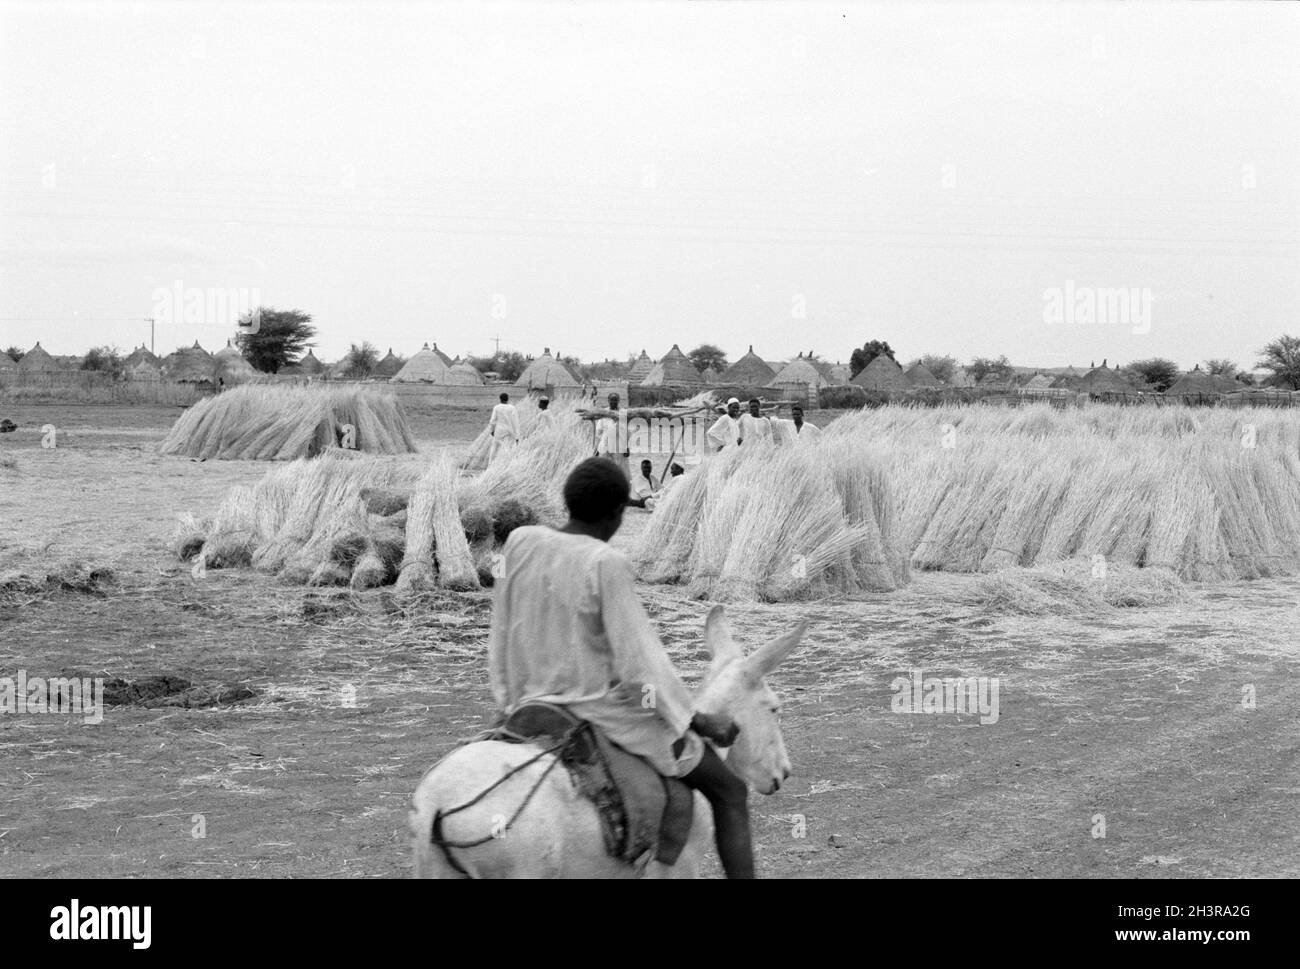 Afrika, Sudan, in der Nähe von Wad Madani 1976. Stapel von Schilf oder Stroh wurden für Dächer und Wände von Hütten und Häusern in einem neuen Dorf am Stadtrand verwendet. Neben der Bahnstrecke gelegen. Ein bot, der auf einem Esel reitet. Stockfoto